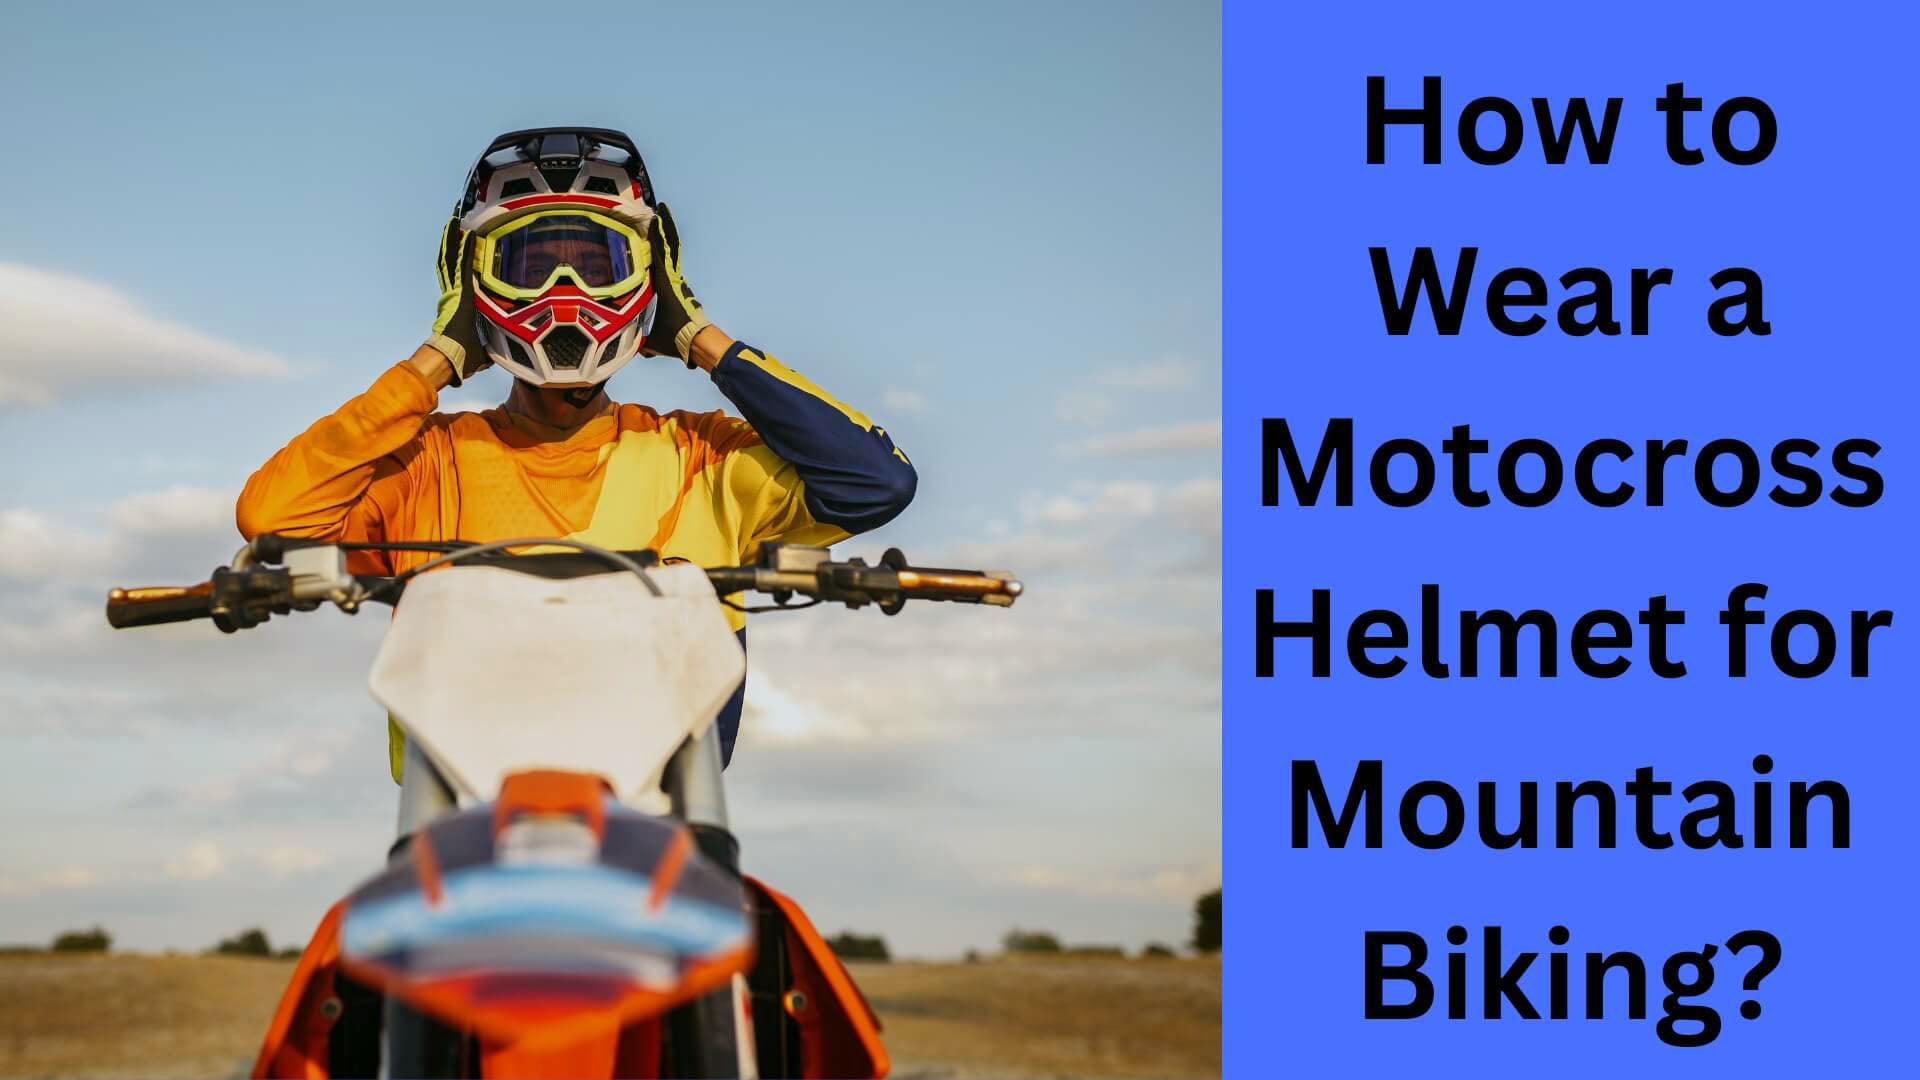 How to Wear a Motocross Helmet for Mountain Biking?